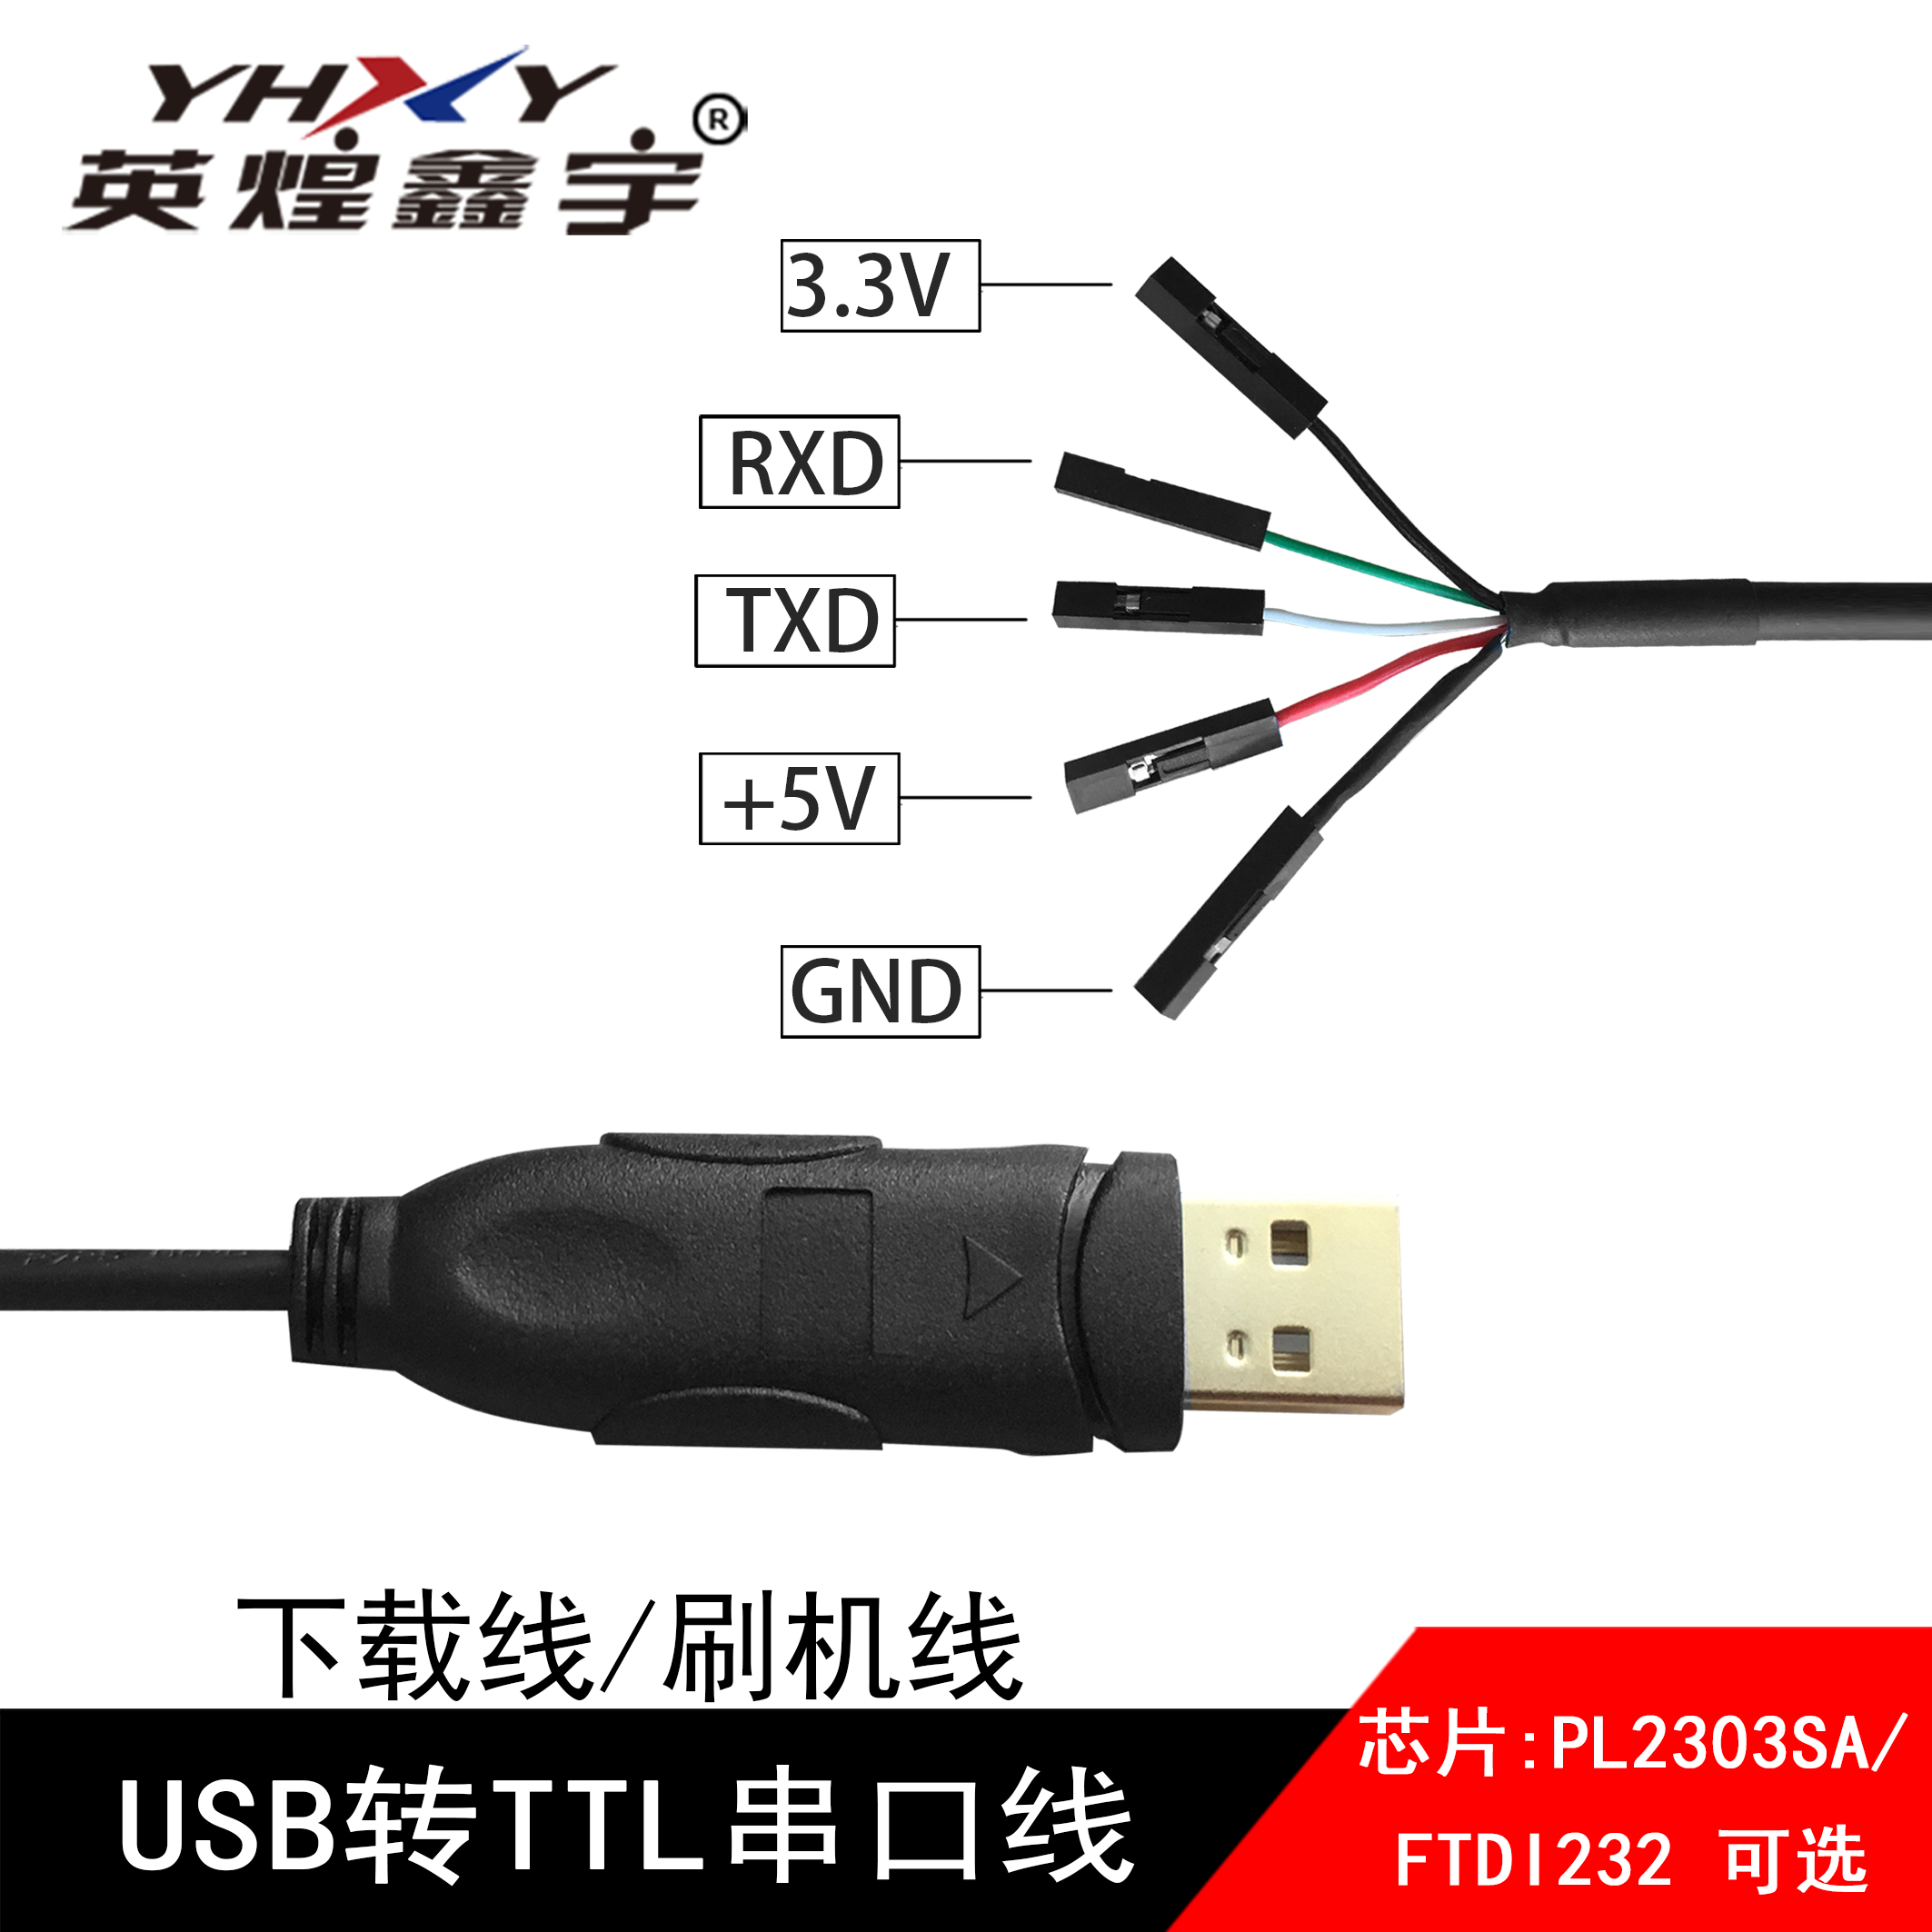 USB转TTL串口线 串口线  刷机线